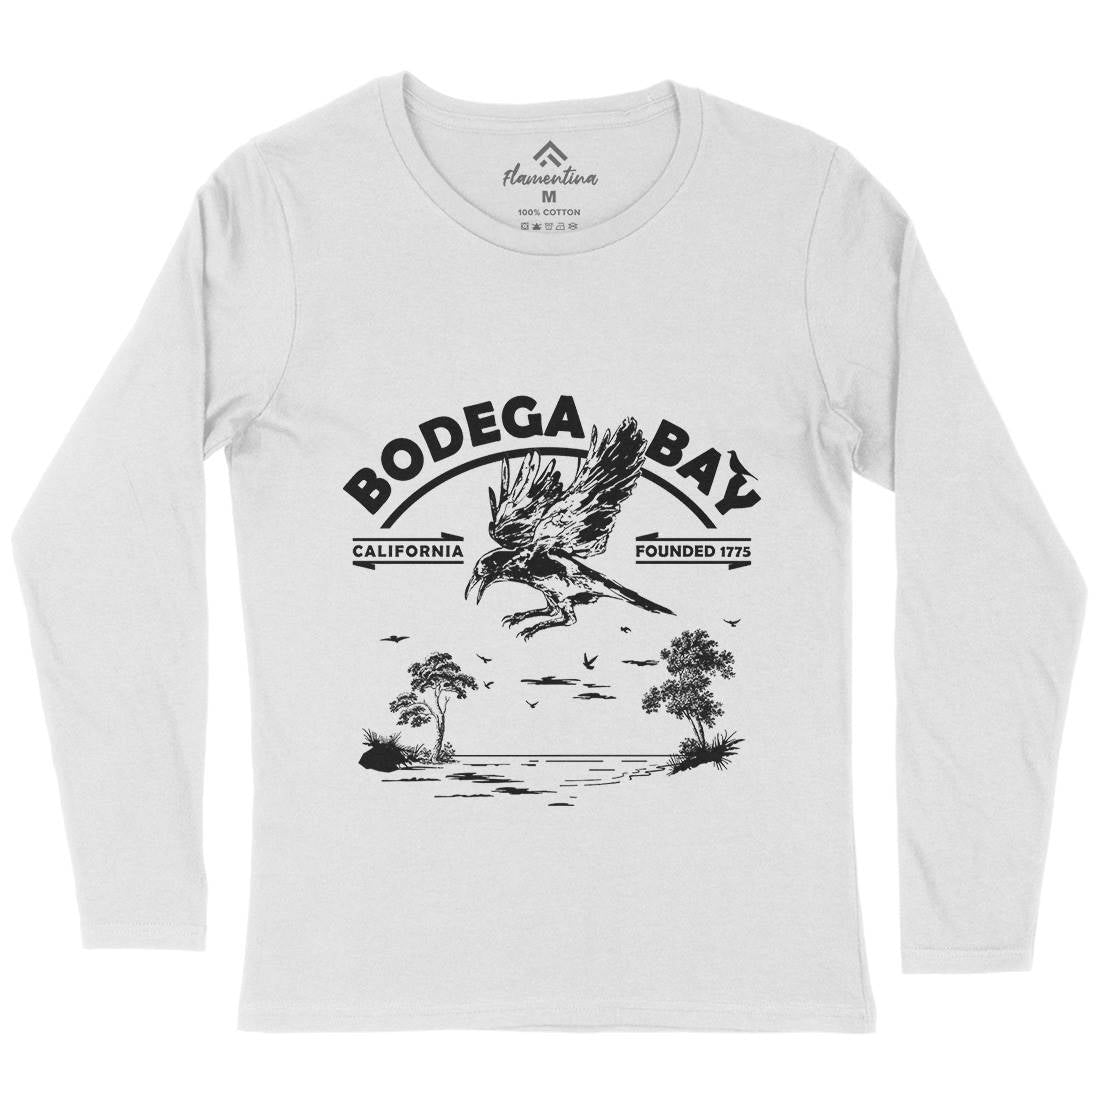 Bodega Bay Womens Long Sleeve T-Shirt Horror D310